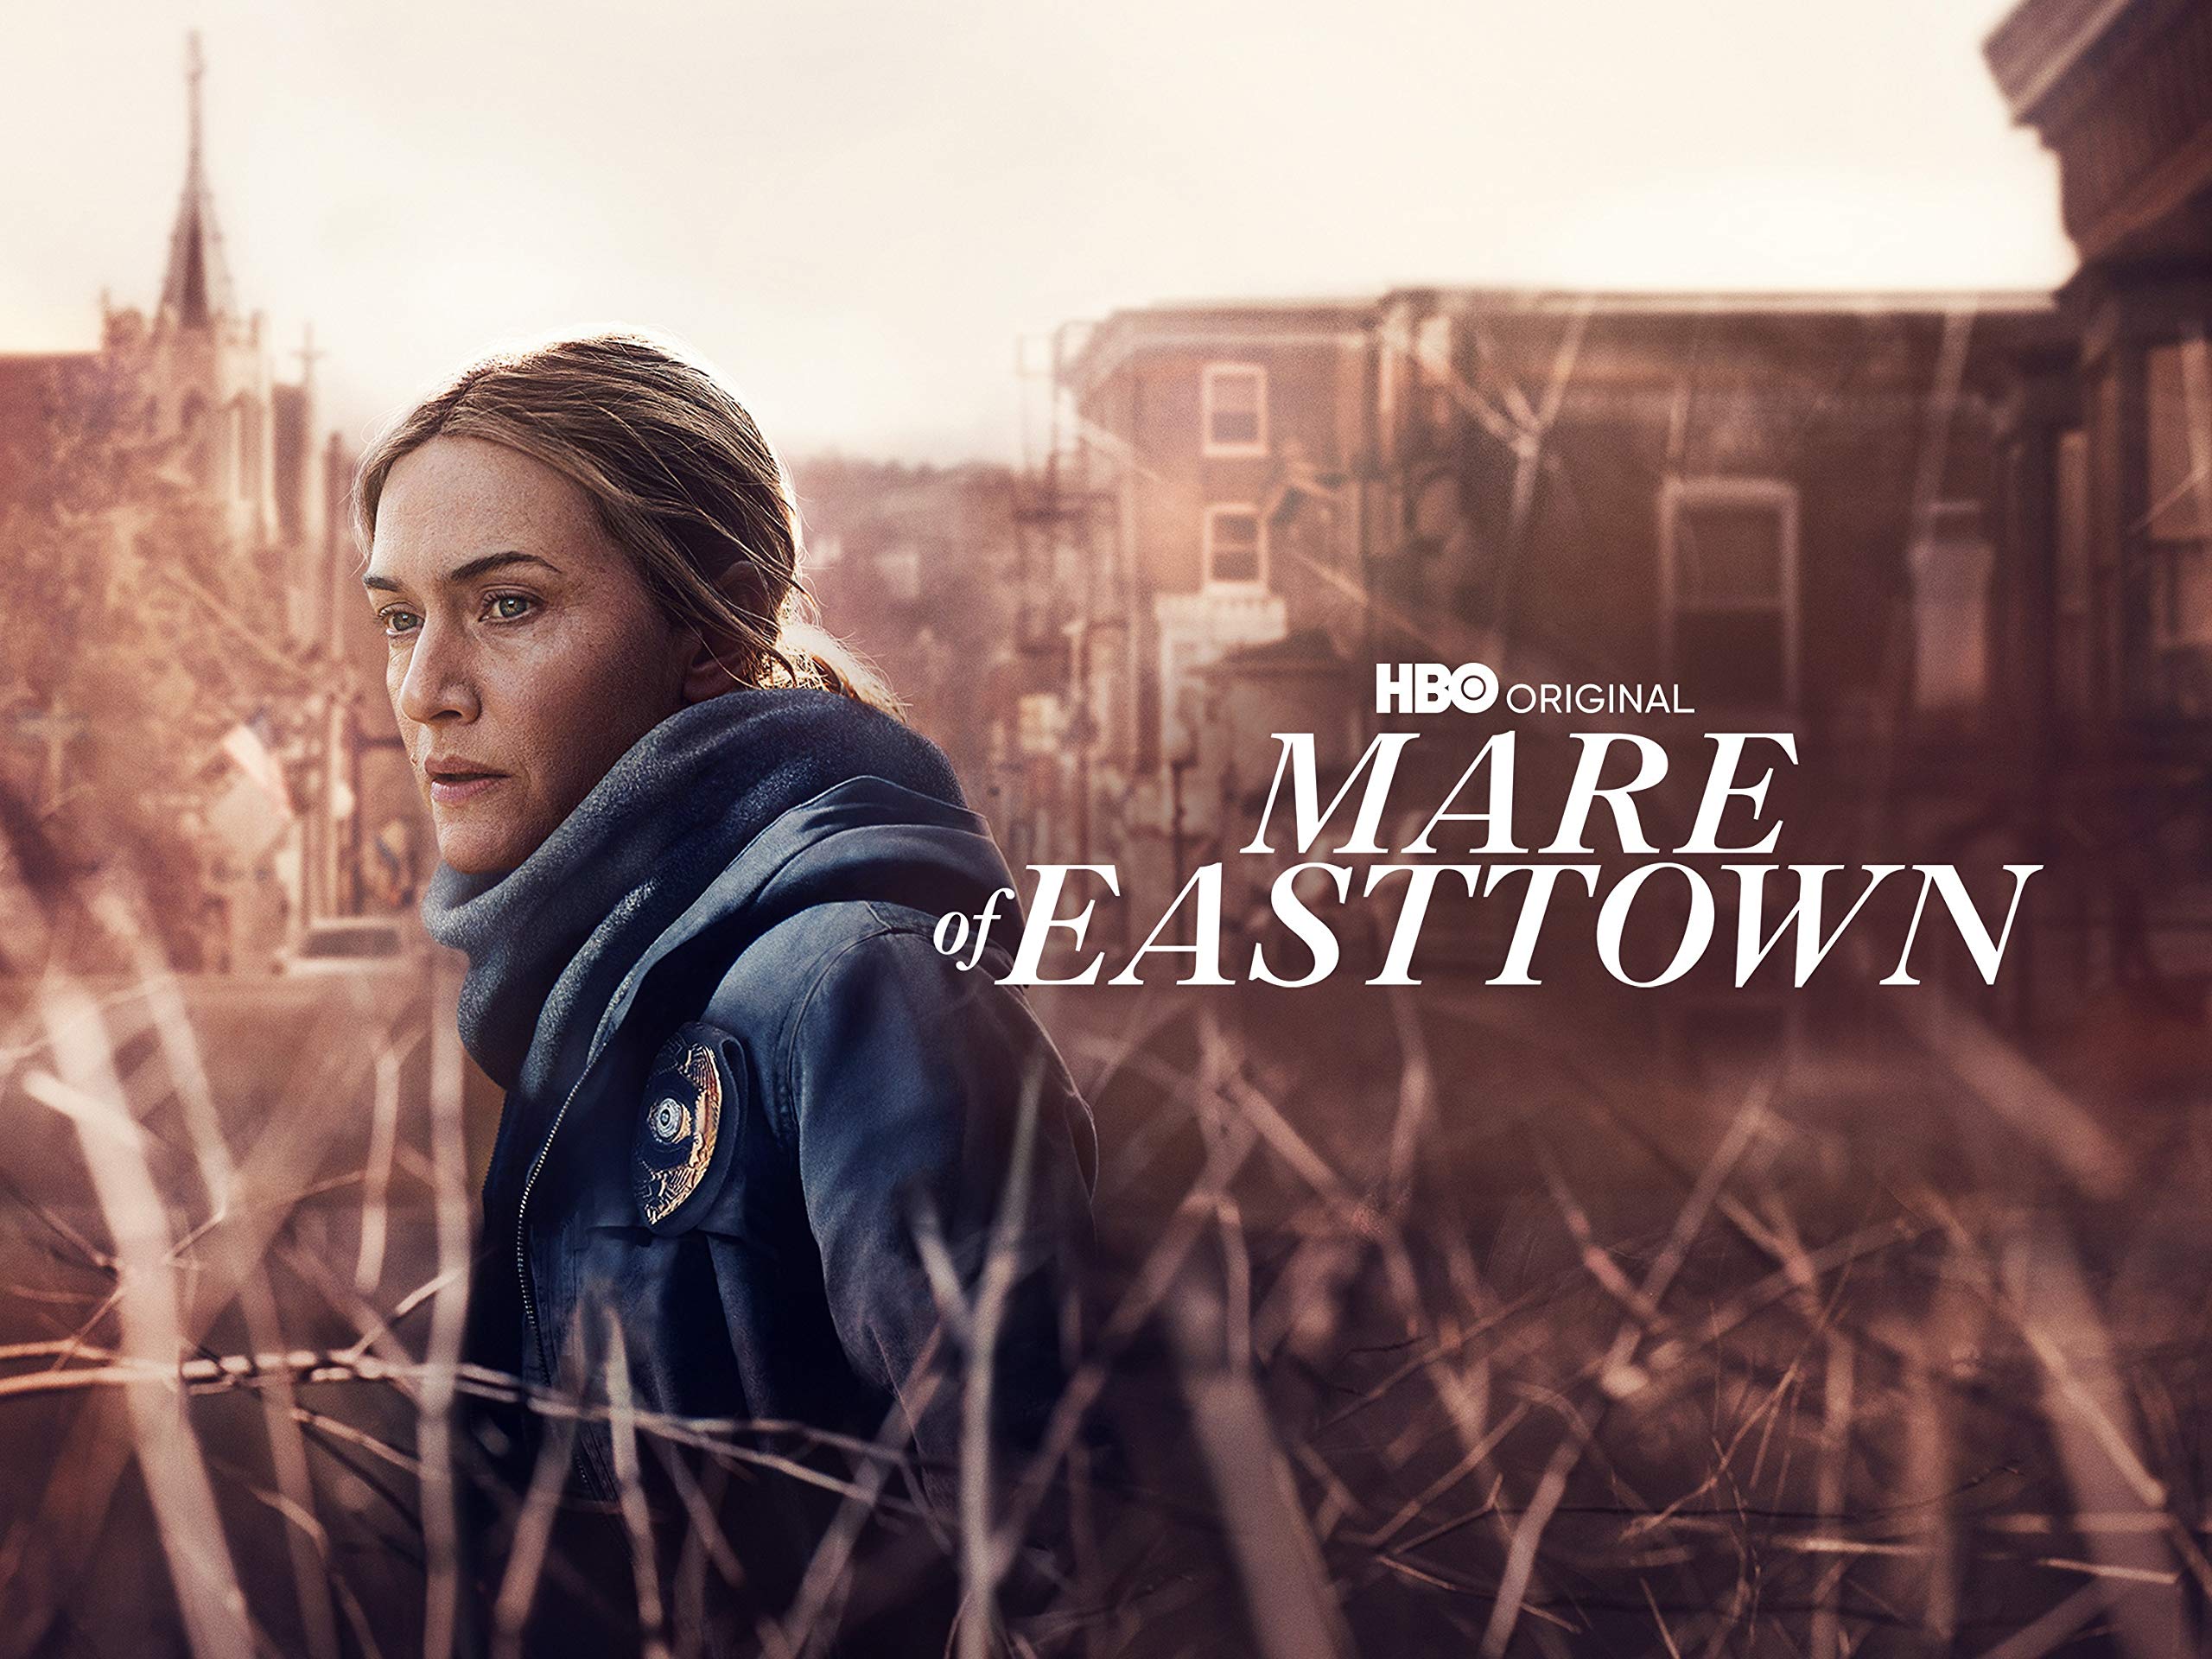 سریال میر از ایست تاون Mare of Easttown: یک پرونده قتل در ترکیب درام چالش های زندگی!